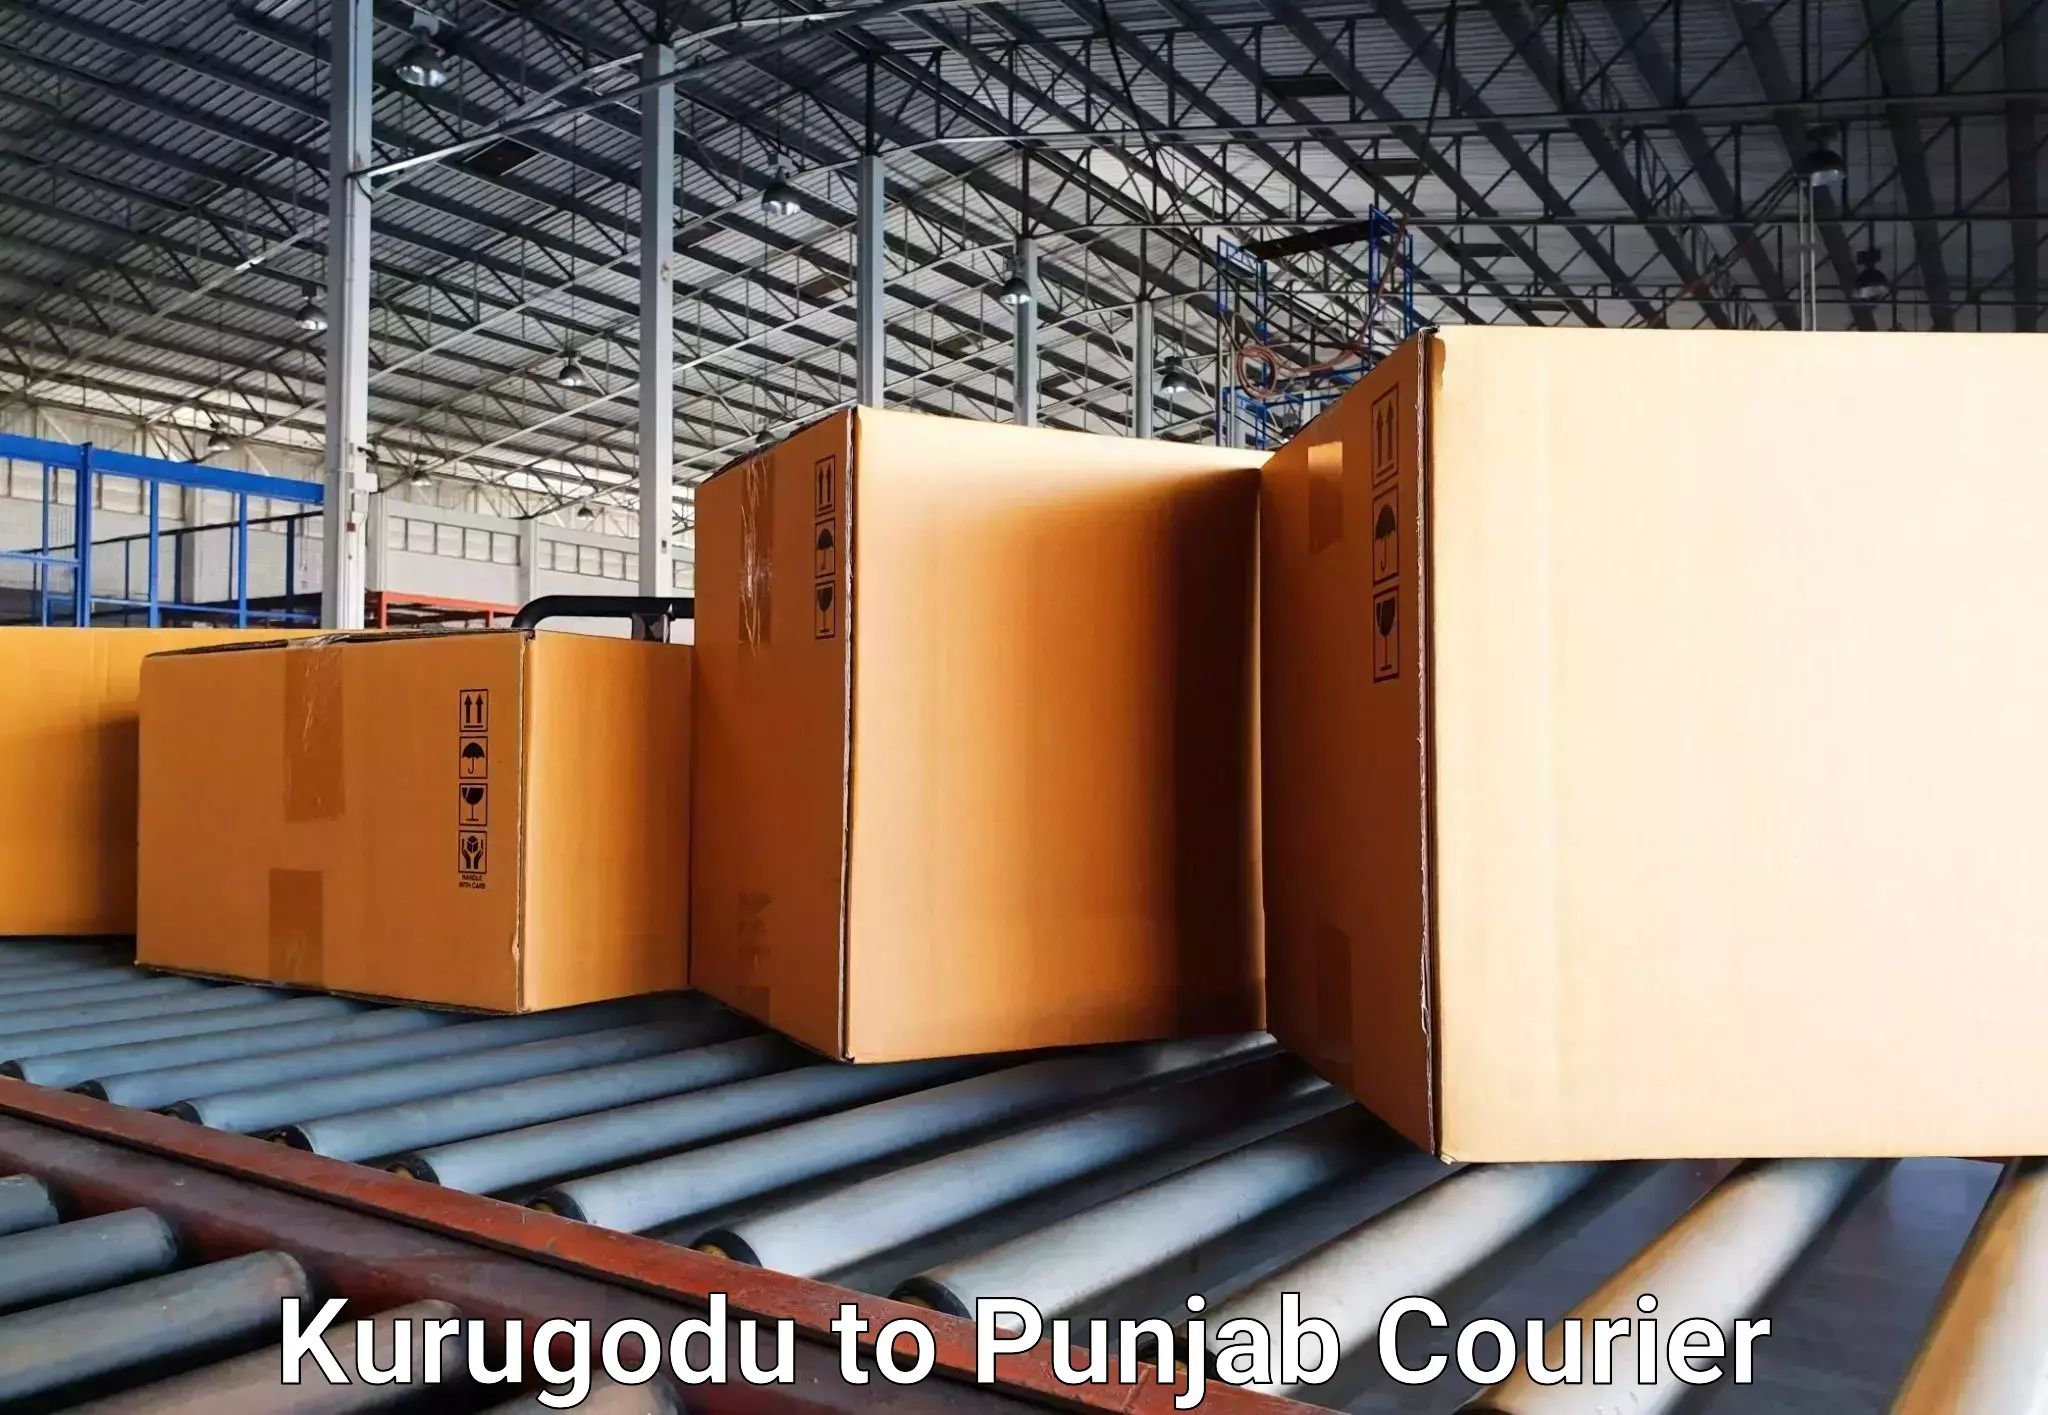 Luggage delivery network Kurugodu to Punjab